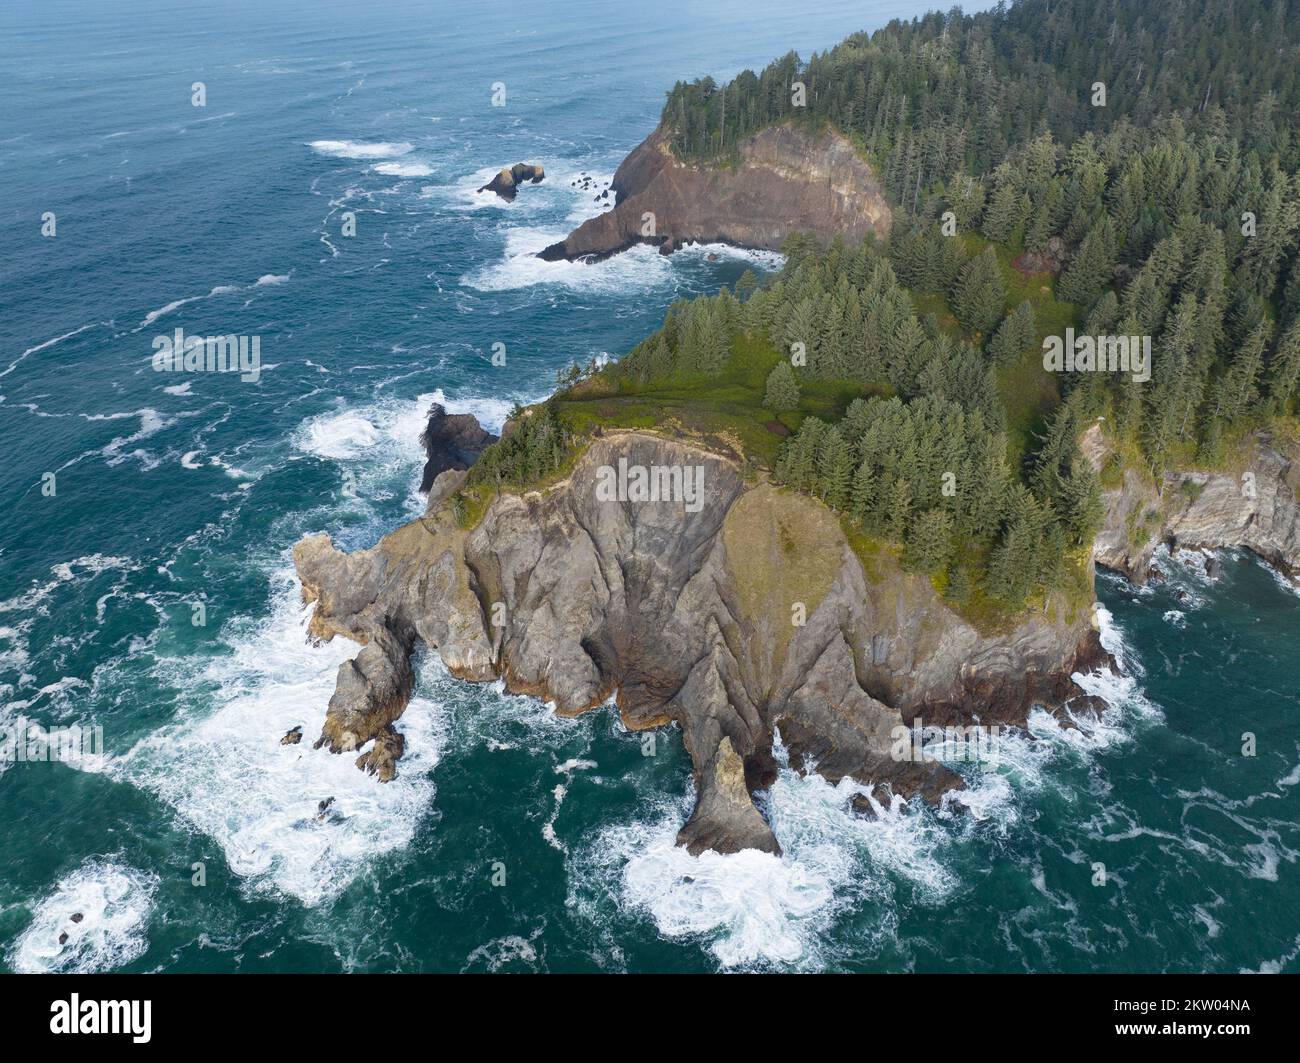 Il freddo Oceano Pacifico si bagna contro la costa frastagliata dell'Oregon settentrionale. Questo nord-ovest del Pacifico è noto per il suo spettacolare paesaggio all'aperto. Foto Stock